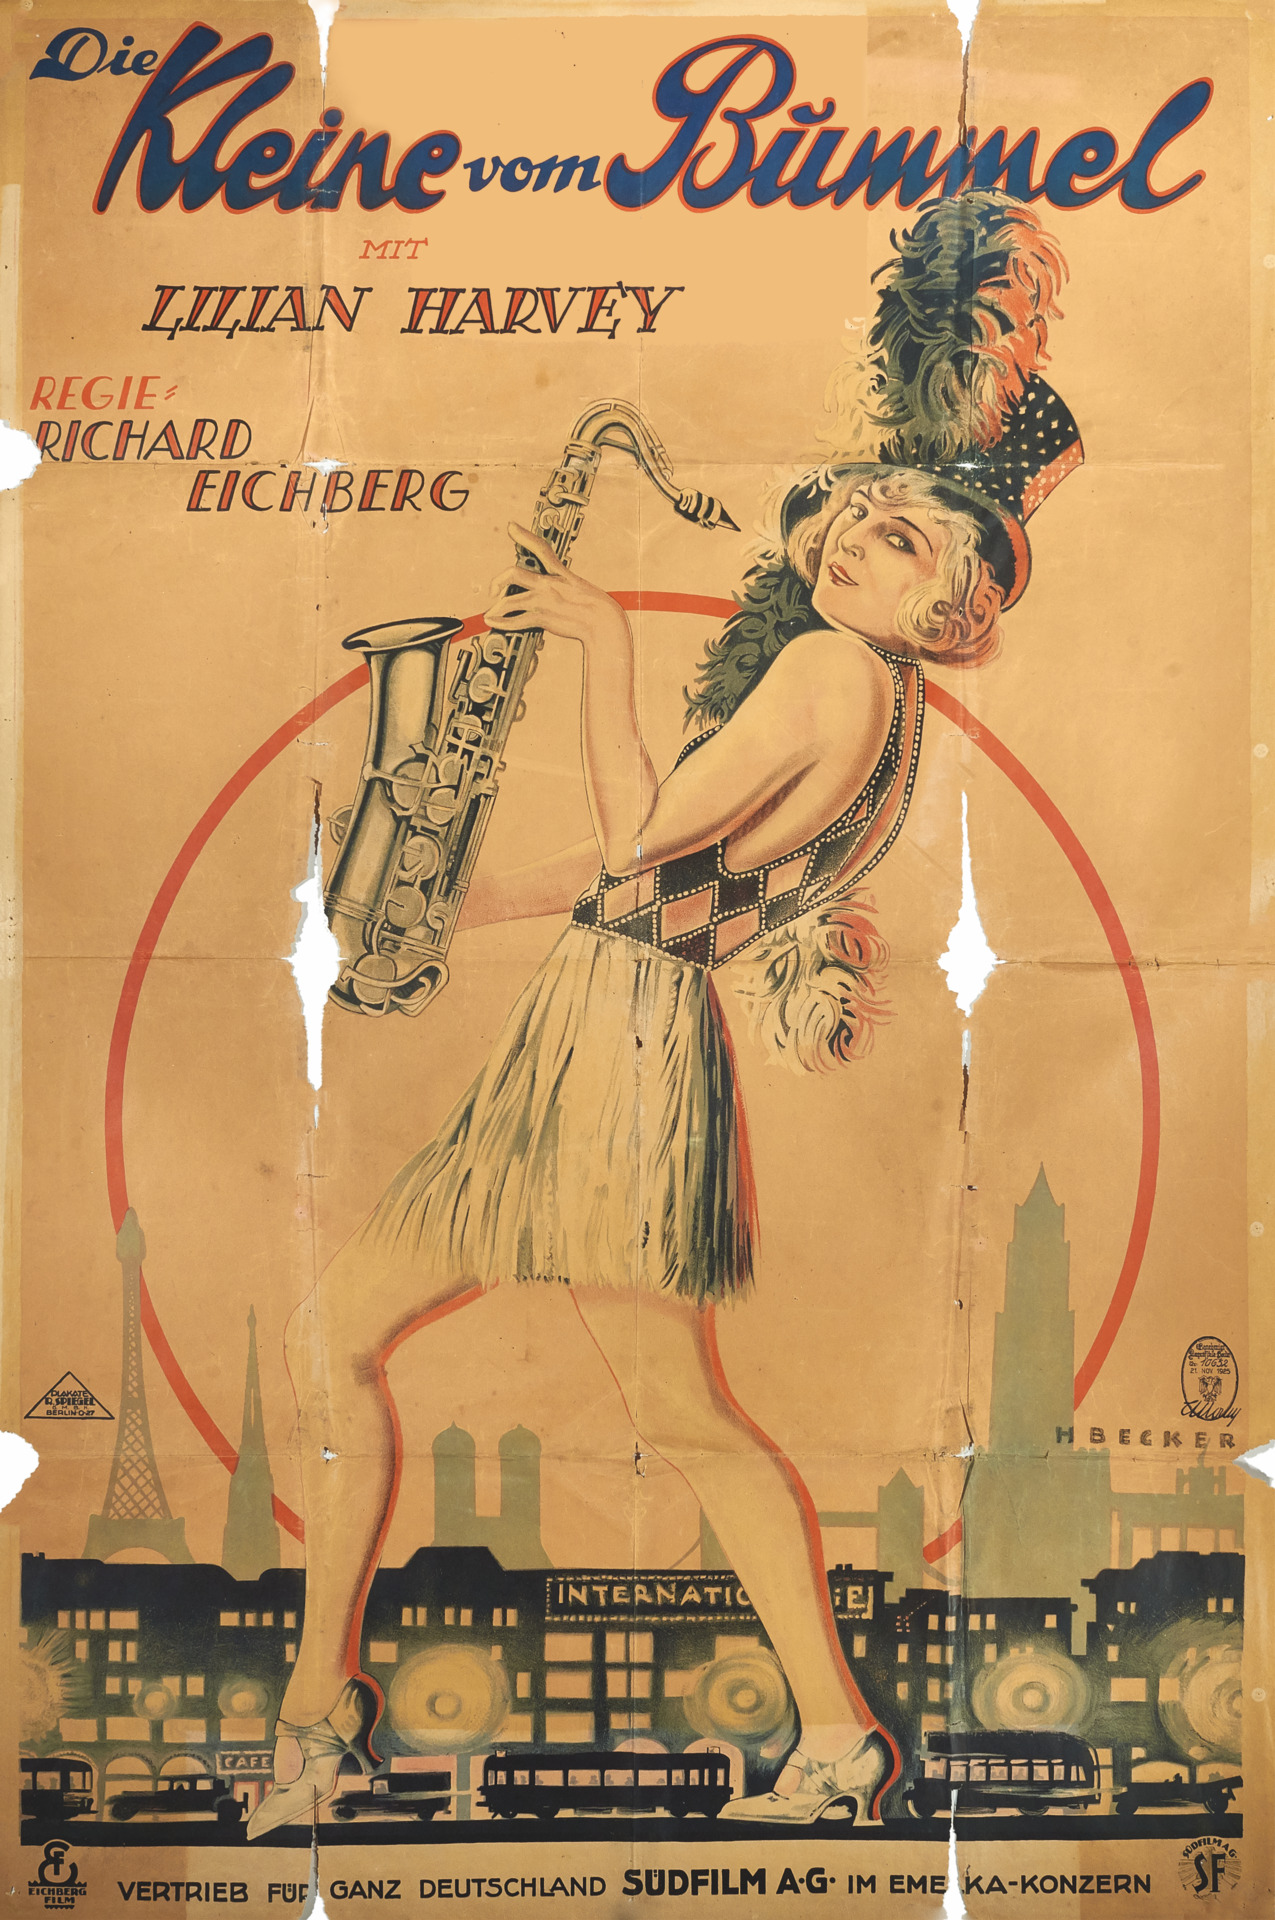 1925_Die_Kleine_vom_Bummel_Saxophon.png